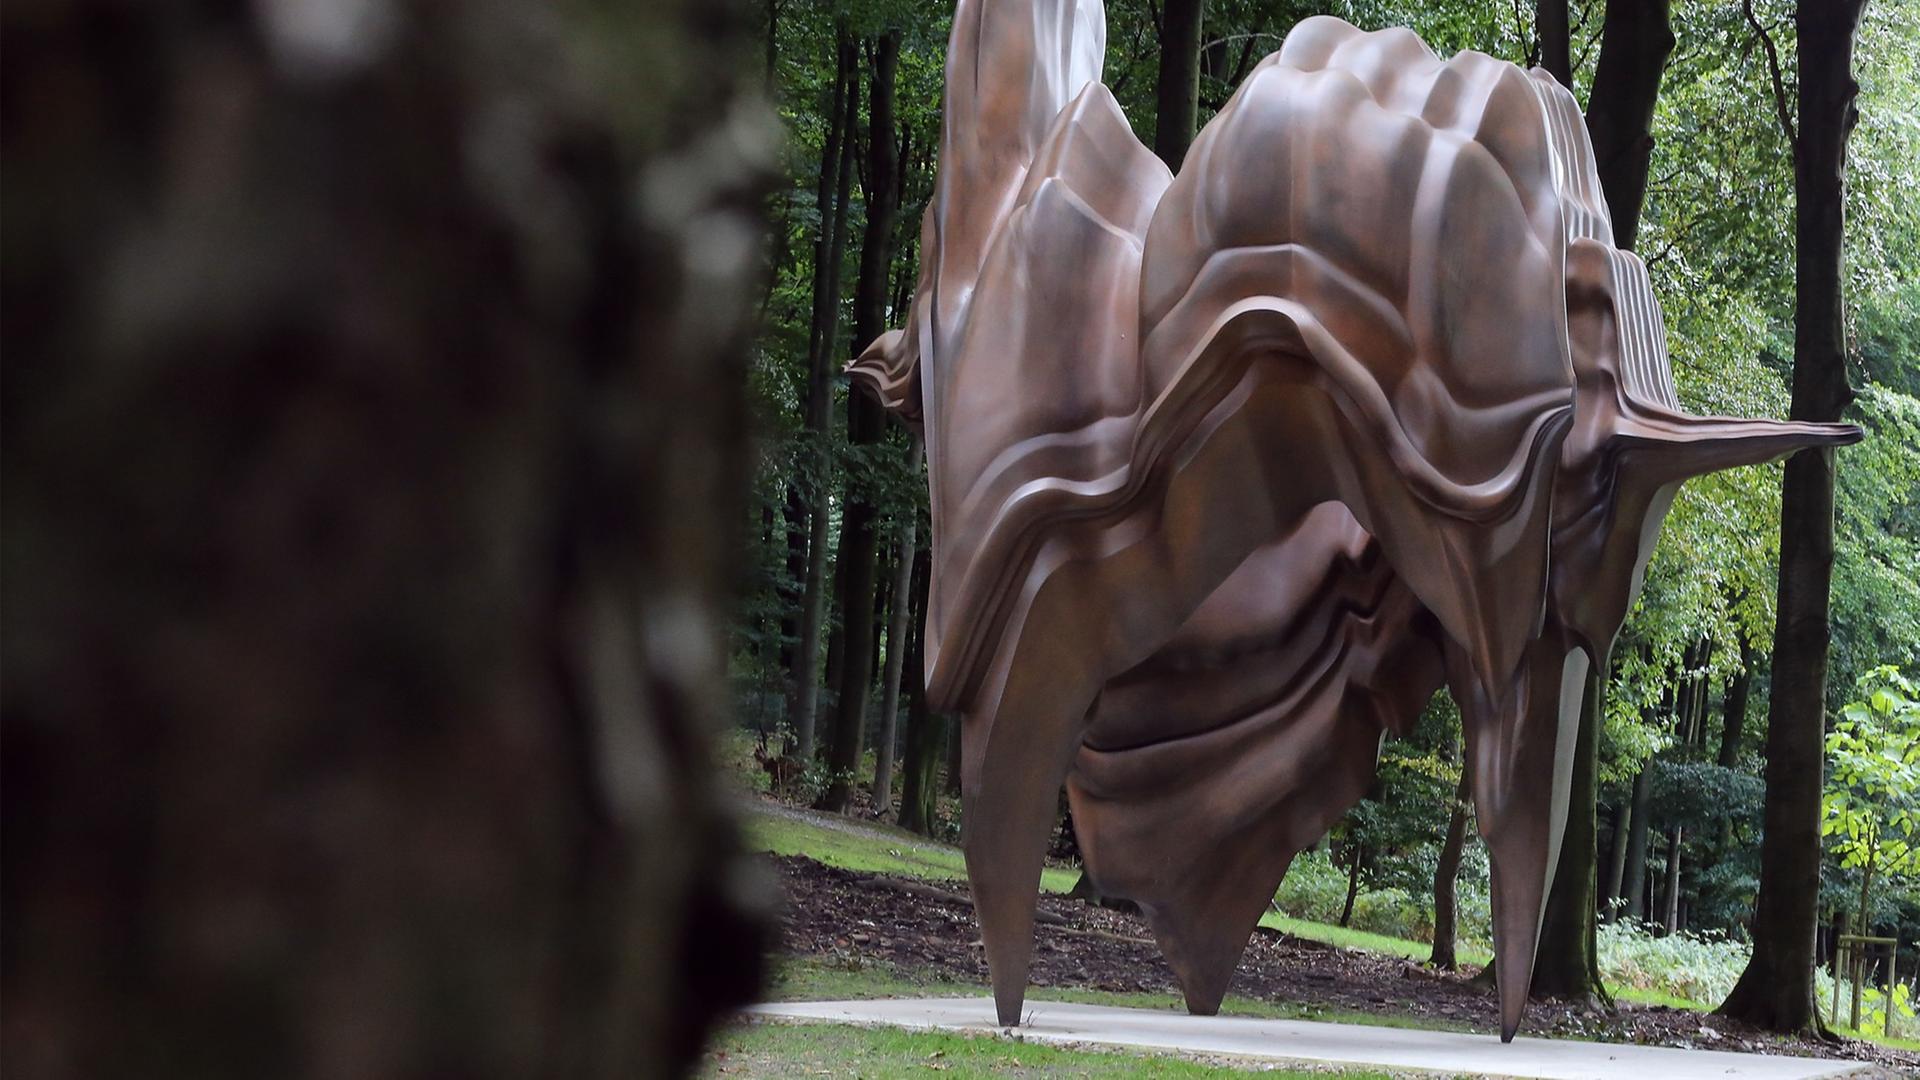 Die Skulptur "Caldera" des Künstlers Tony Cragg steht am 17.09.2013 in Wuppertal (Nordrhein-Westfalen) im Skulpturenpark. Der Skulpturenpark des renommierten Bildhauers Tony Cragg in Wuppertal ist erweitert worden.